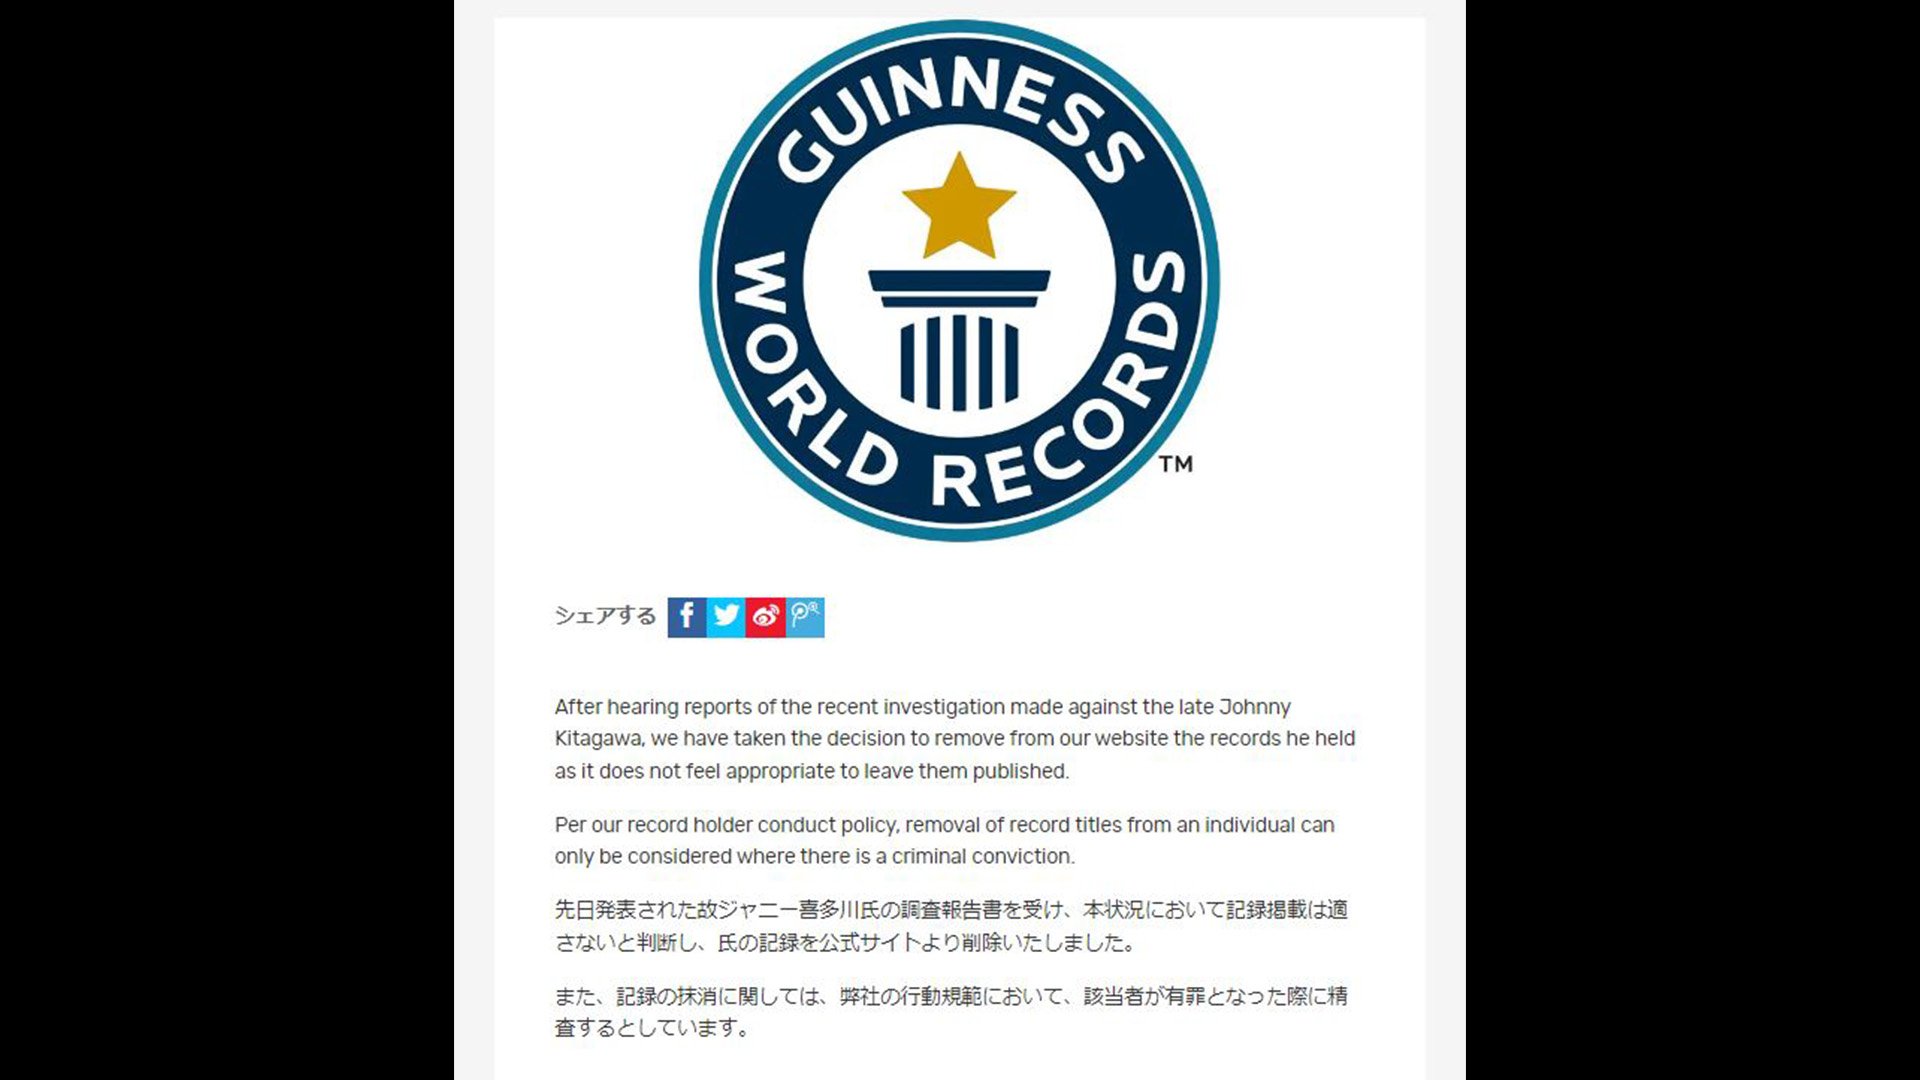 「ギネス」がジャニー喜多川氏の「記録」を公式サイトから削除　性加害問題を受け「本状況において記録掲載は適さないと判断」